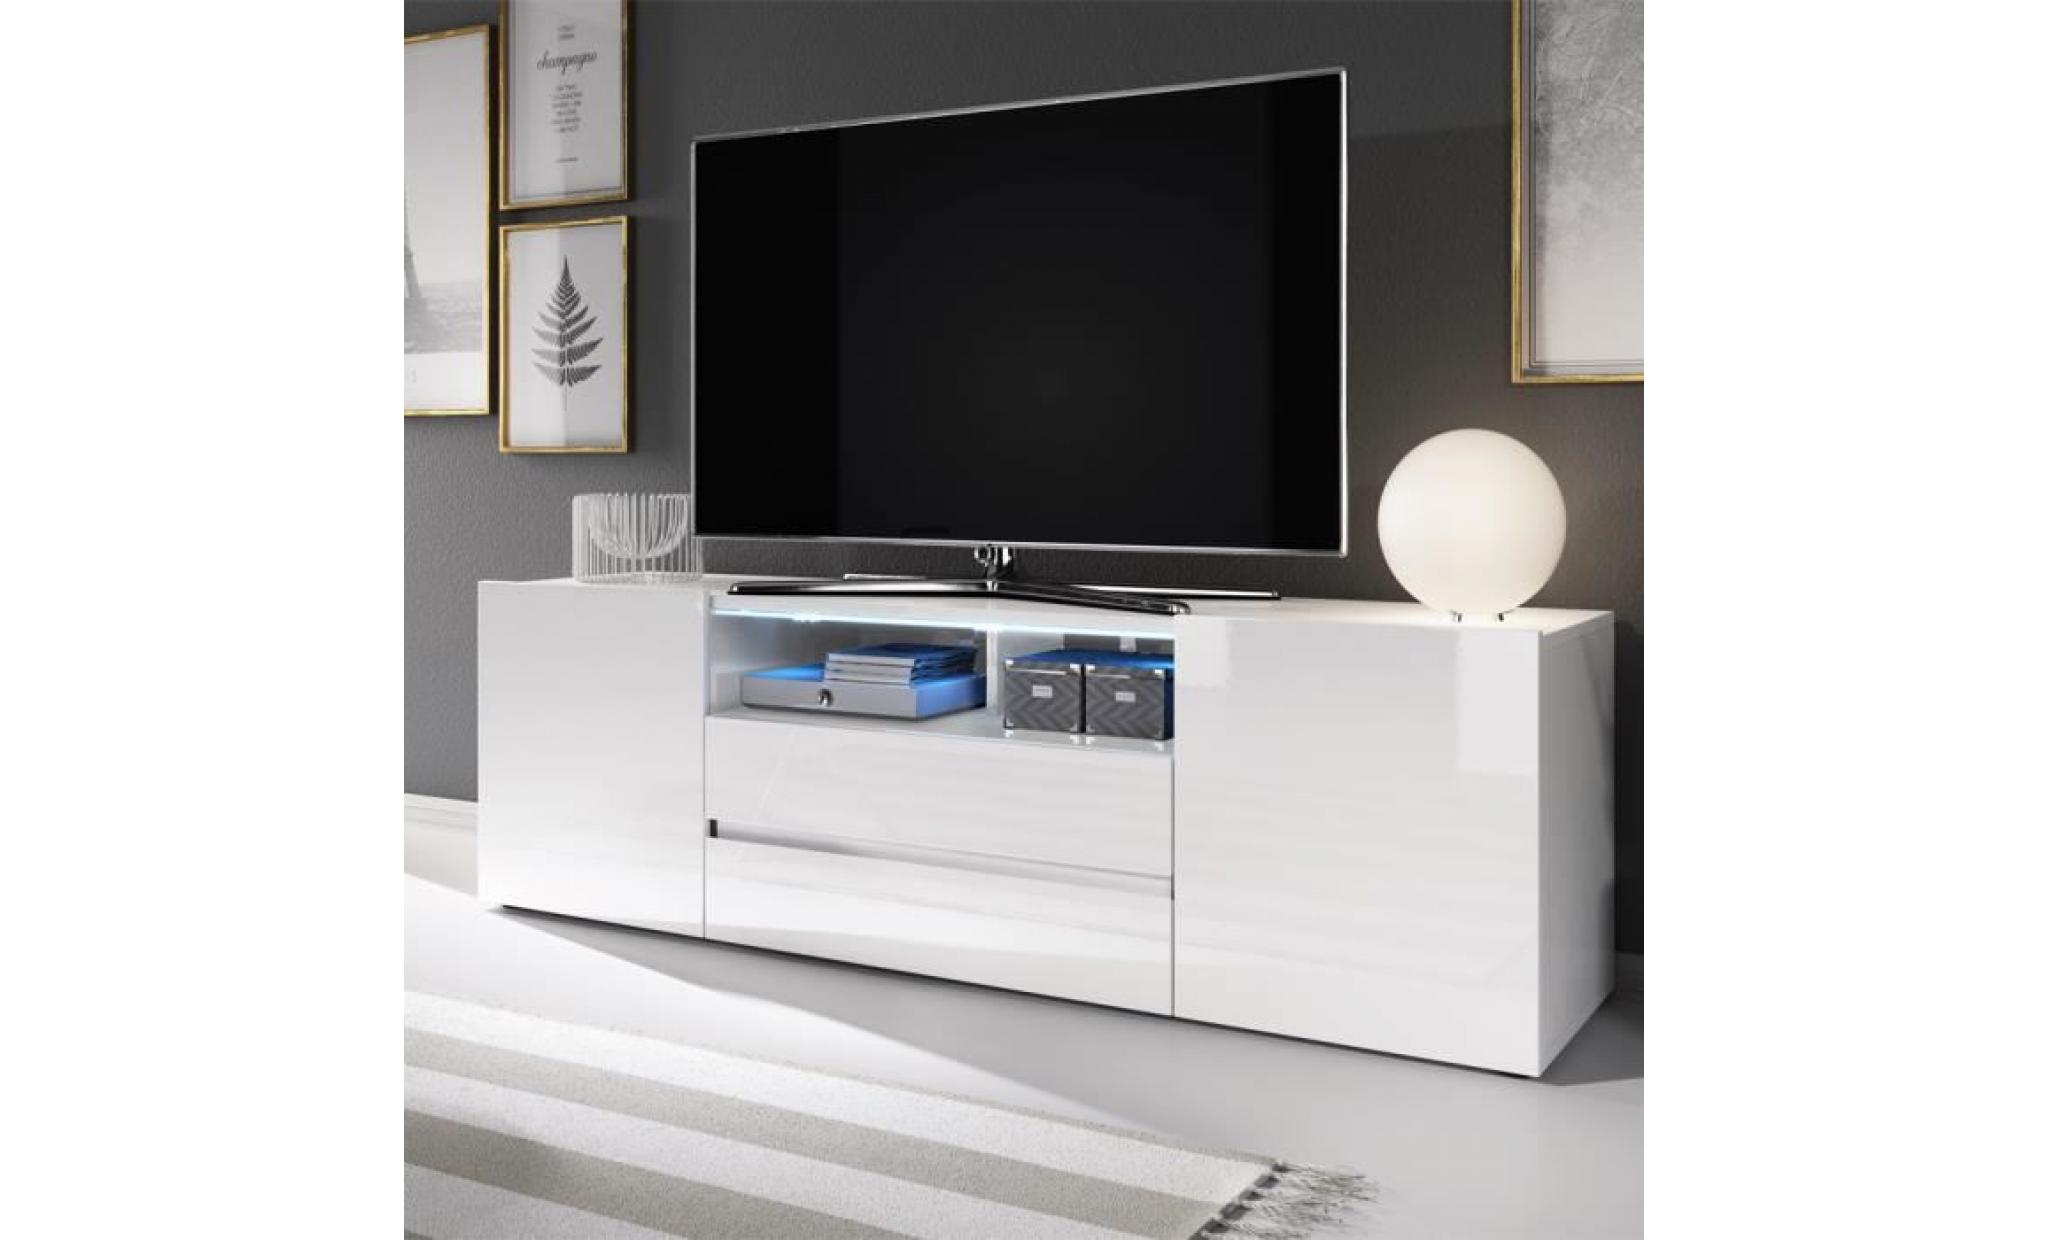 meuble tv / meuble de salon   bros   137 cm   blanc mat / blanc brillant   avec led   2 niches ouvertes   4 compartiments fermés